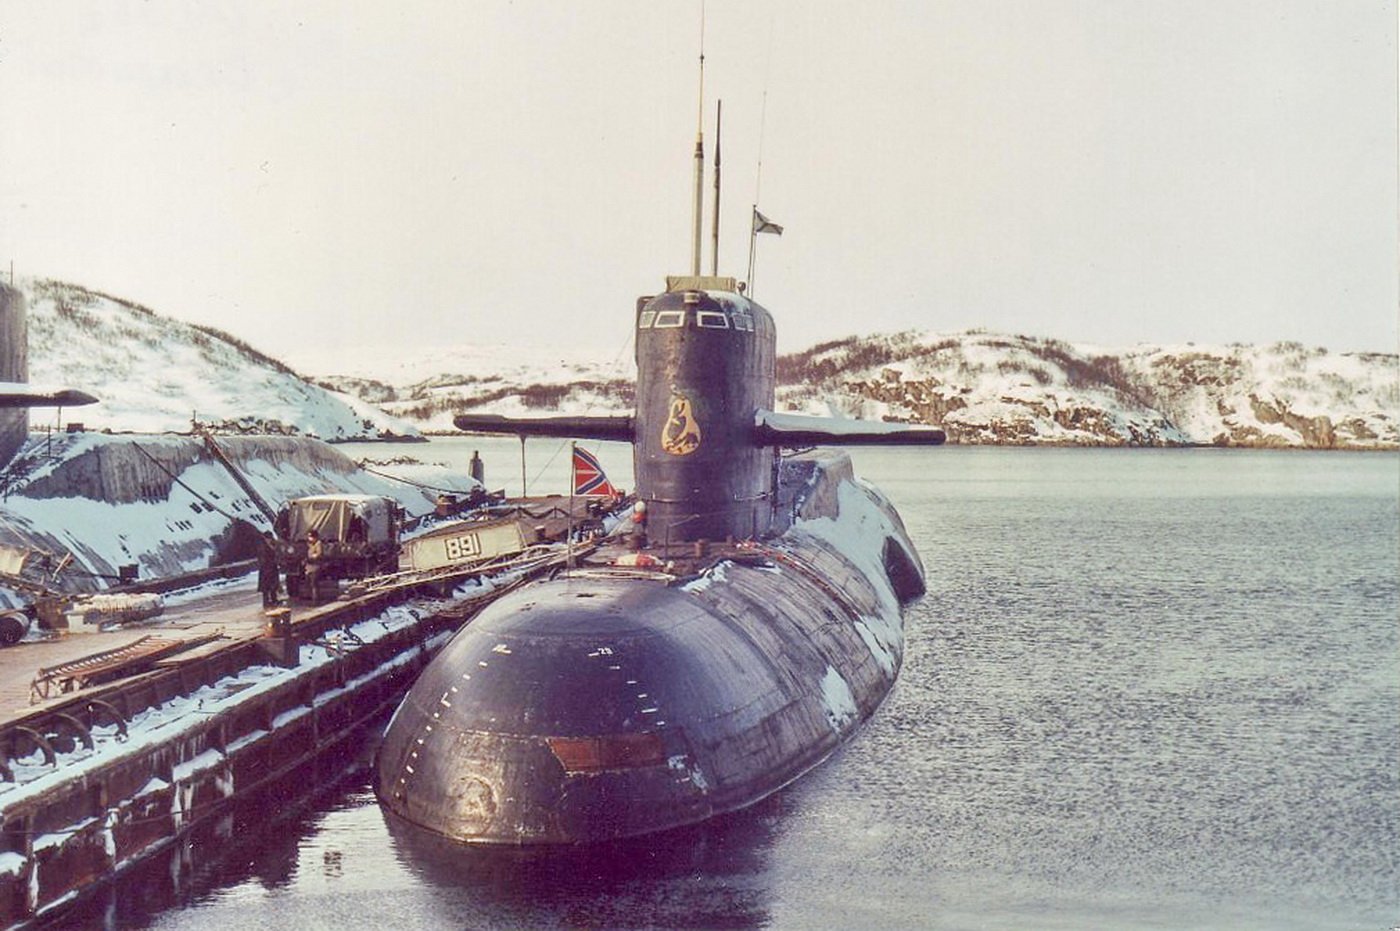 Пл ка. Подводная лодка 667а навага. Проект 667ат груша. Подводная лодка проекта 667ртм. АПЛ 667 АТ груша.